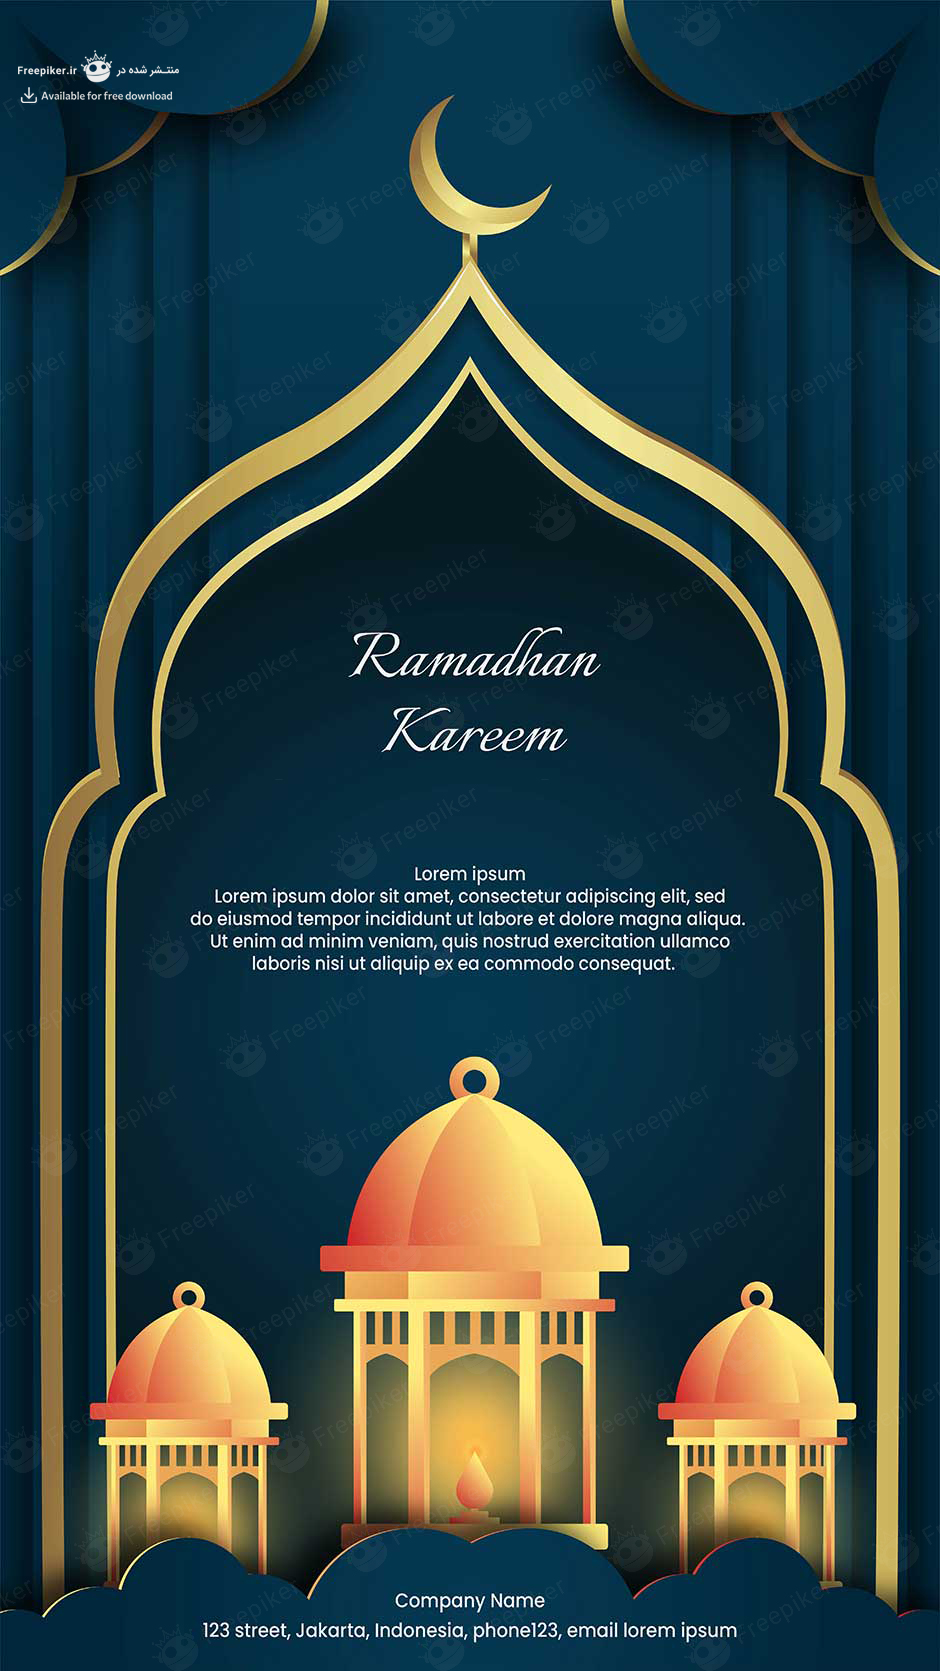 استوری اینستاگرام تبریک ماه رمضان با تم طلایی و مسجد های شیک